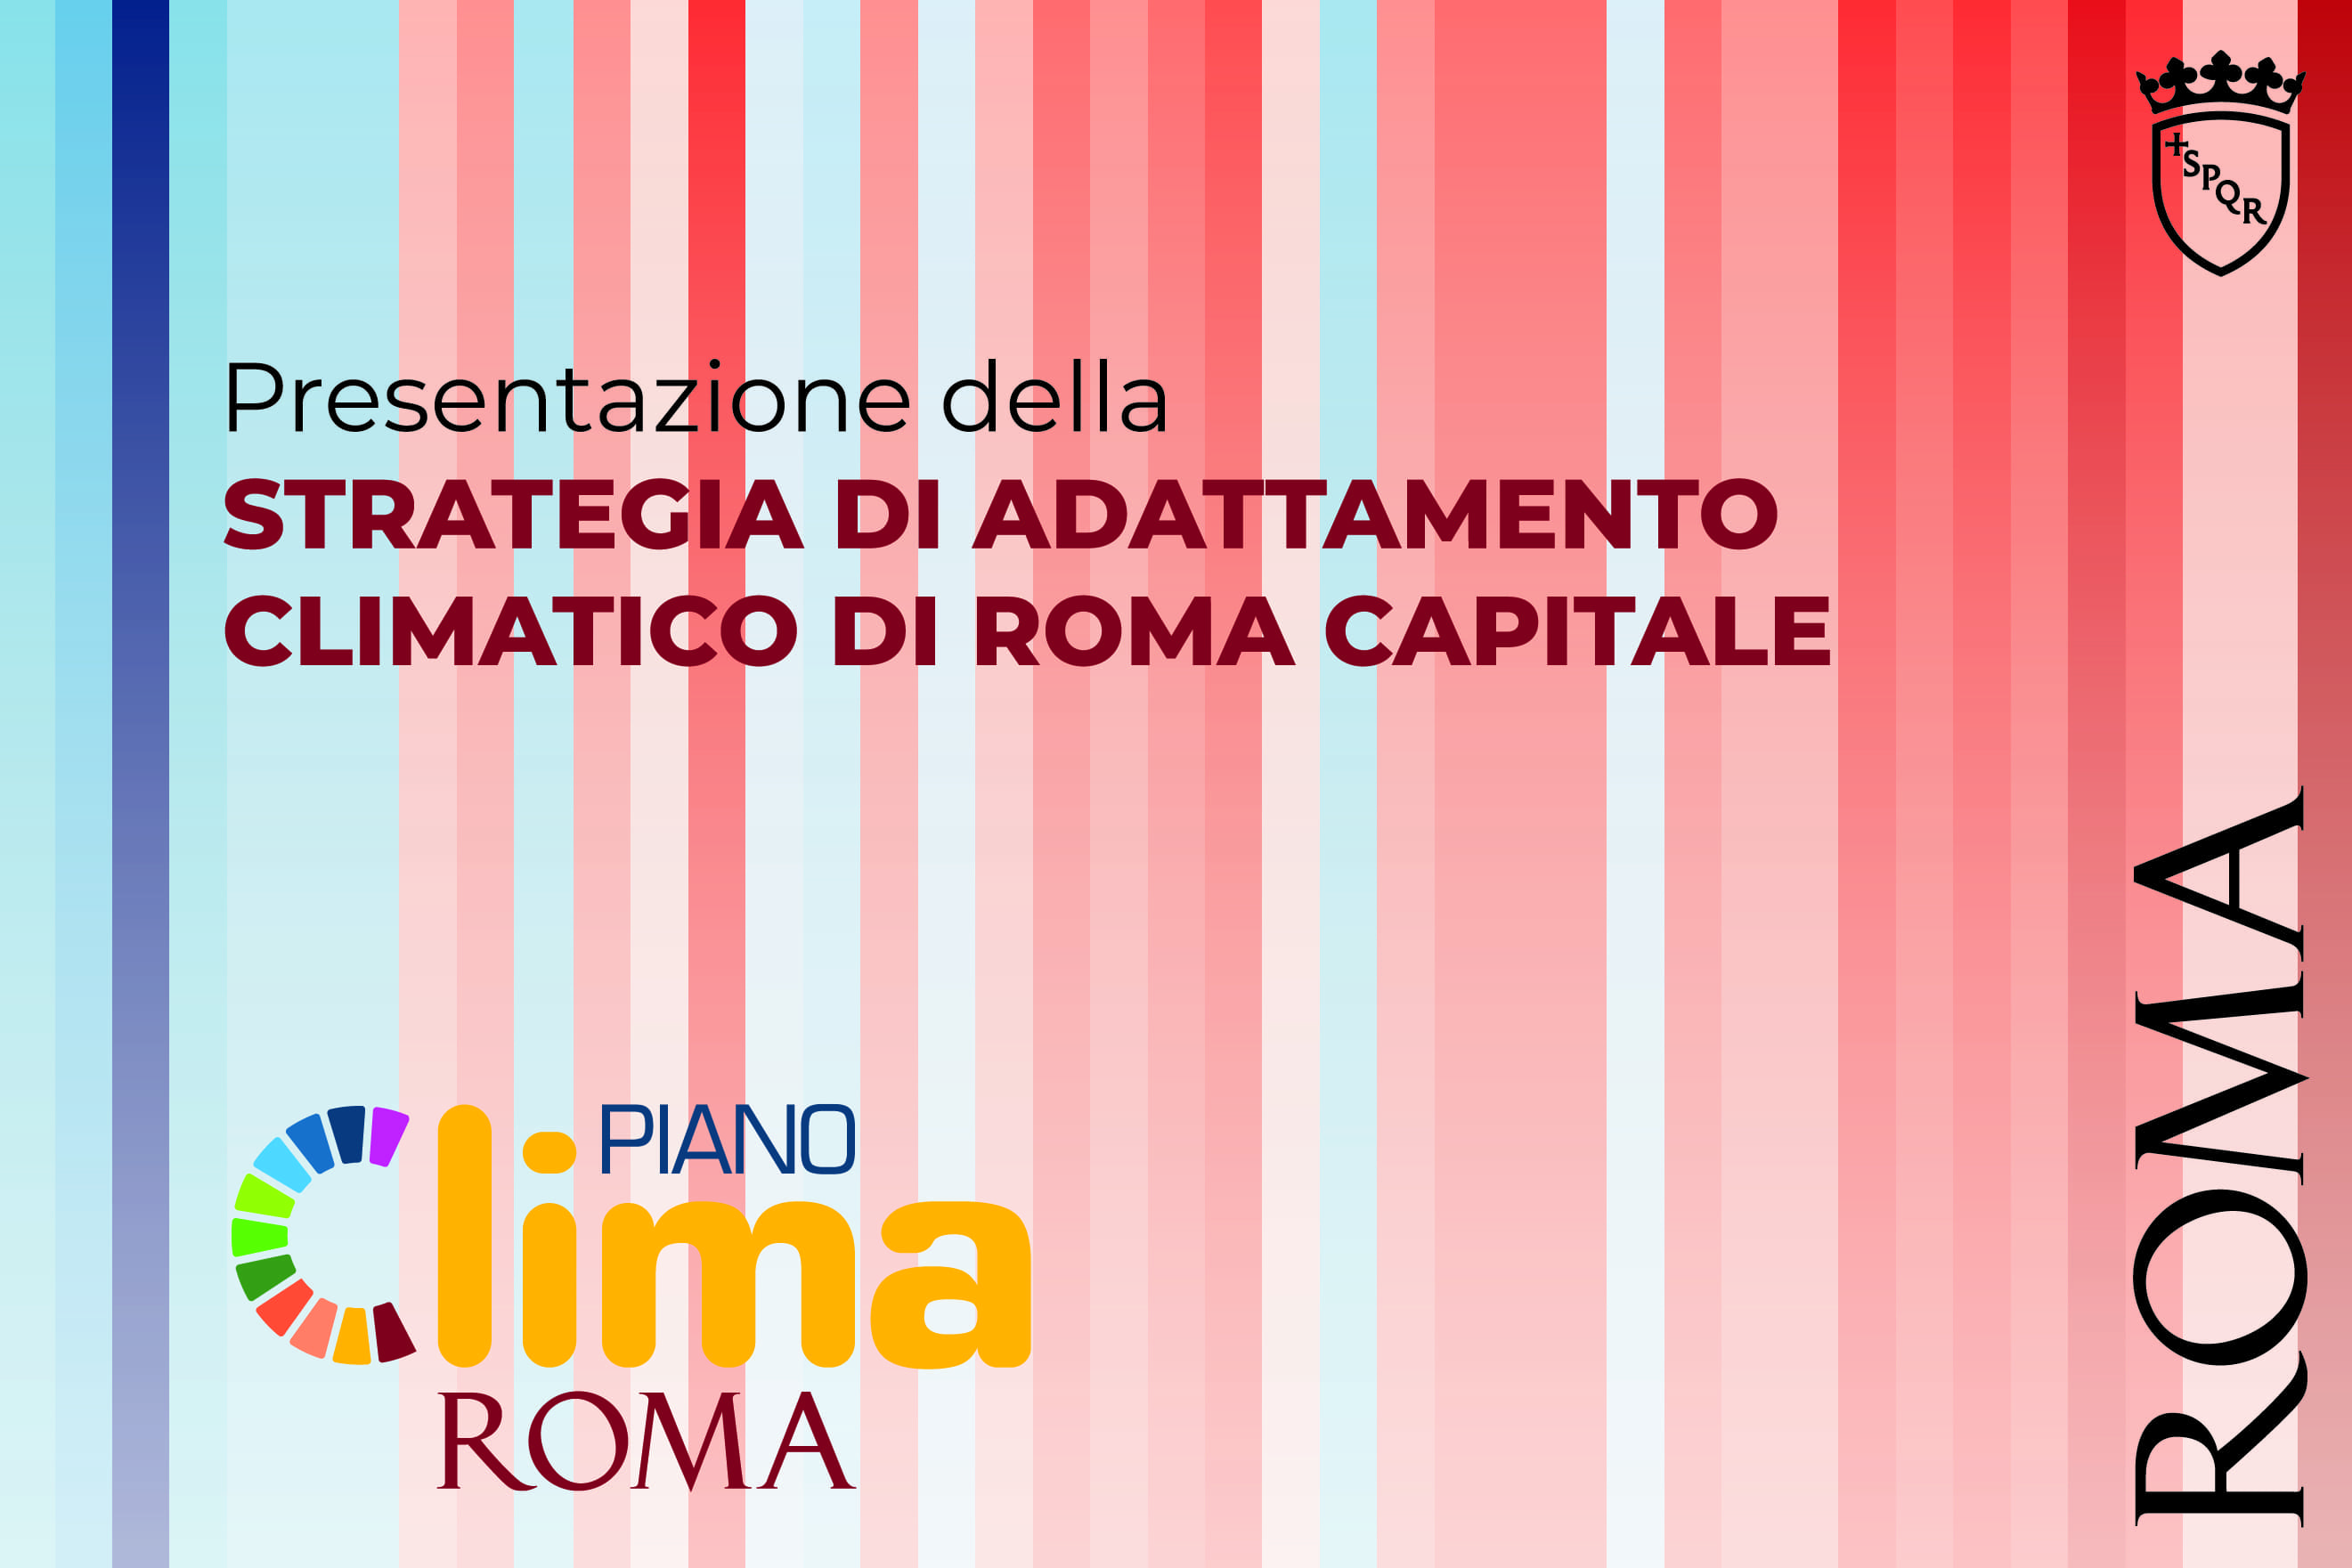 La copertina della Strategia di Adattamento Climatico di Roma Capitale con in basso la scritta "Piano Clima Roma" e il logo di Roma Capitale